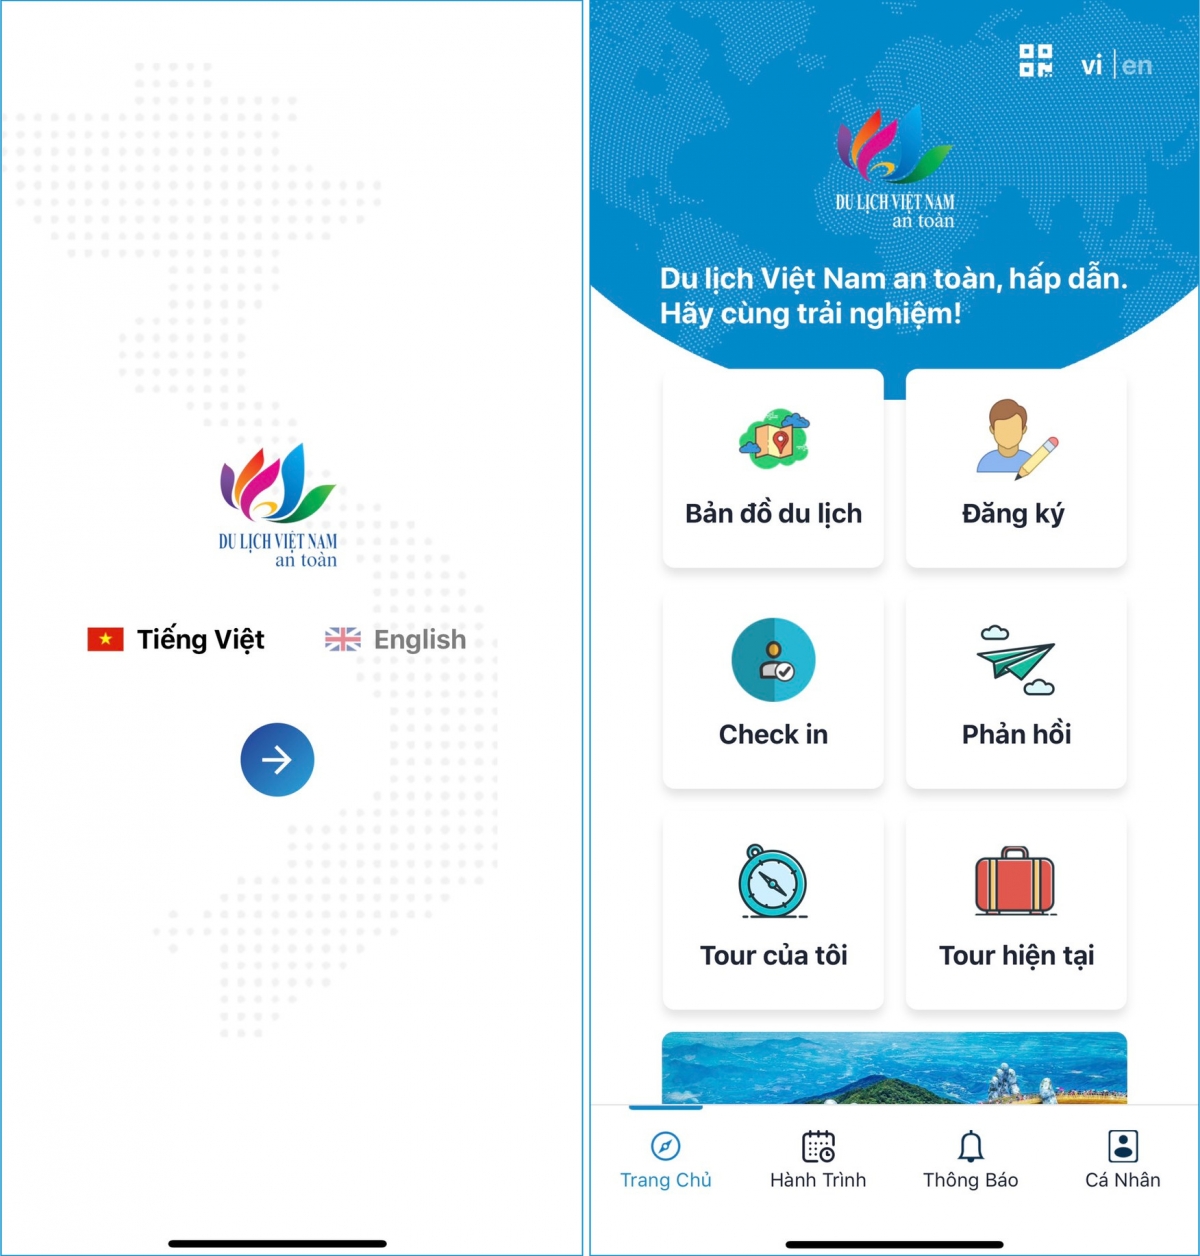 Ứng dụng có hai ngôn ngữ, tiếng Việt và tiếng Anh. Nguồn: Tổng cục Du lịch